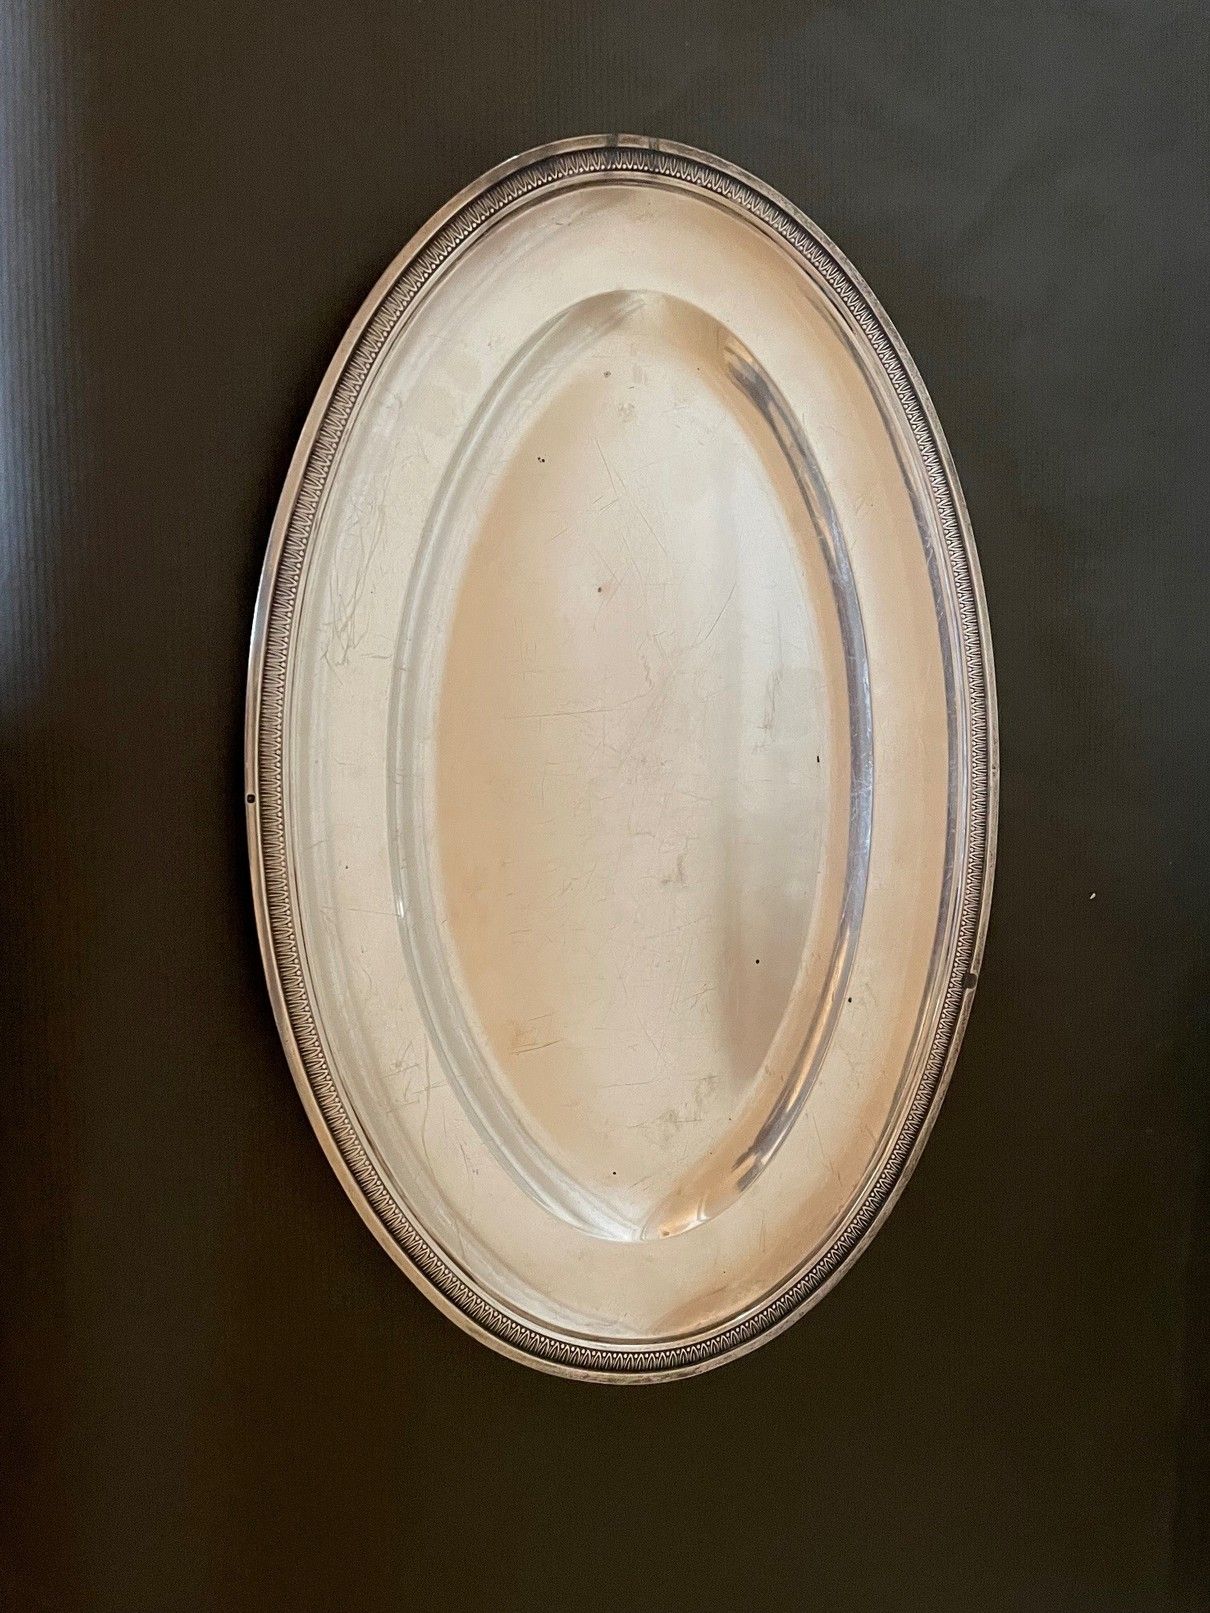 Null Ovale Silberplatte mit Wasserblattapplikation (40 cm).

Gewicht: kommt noch&hellip;